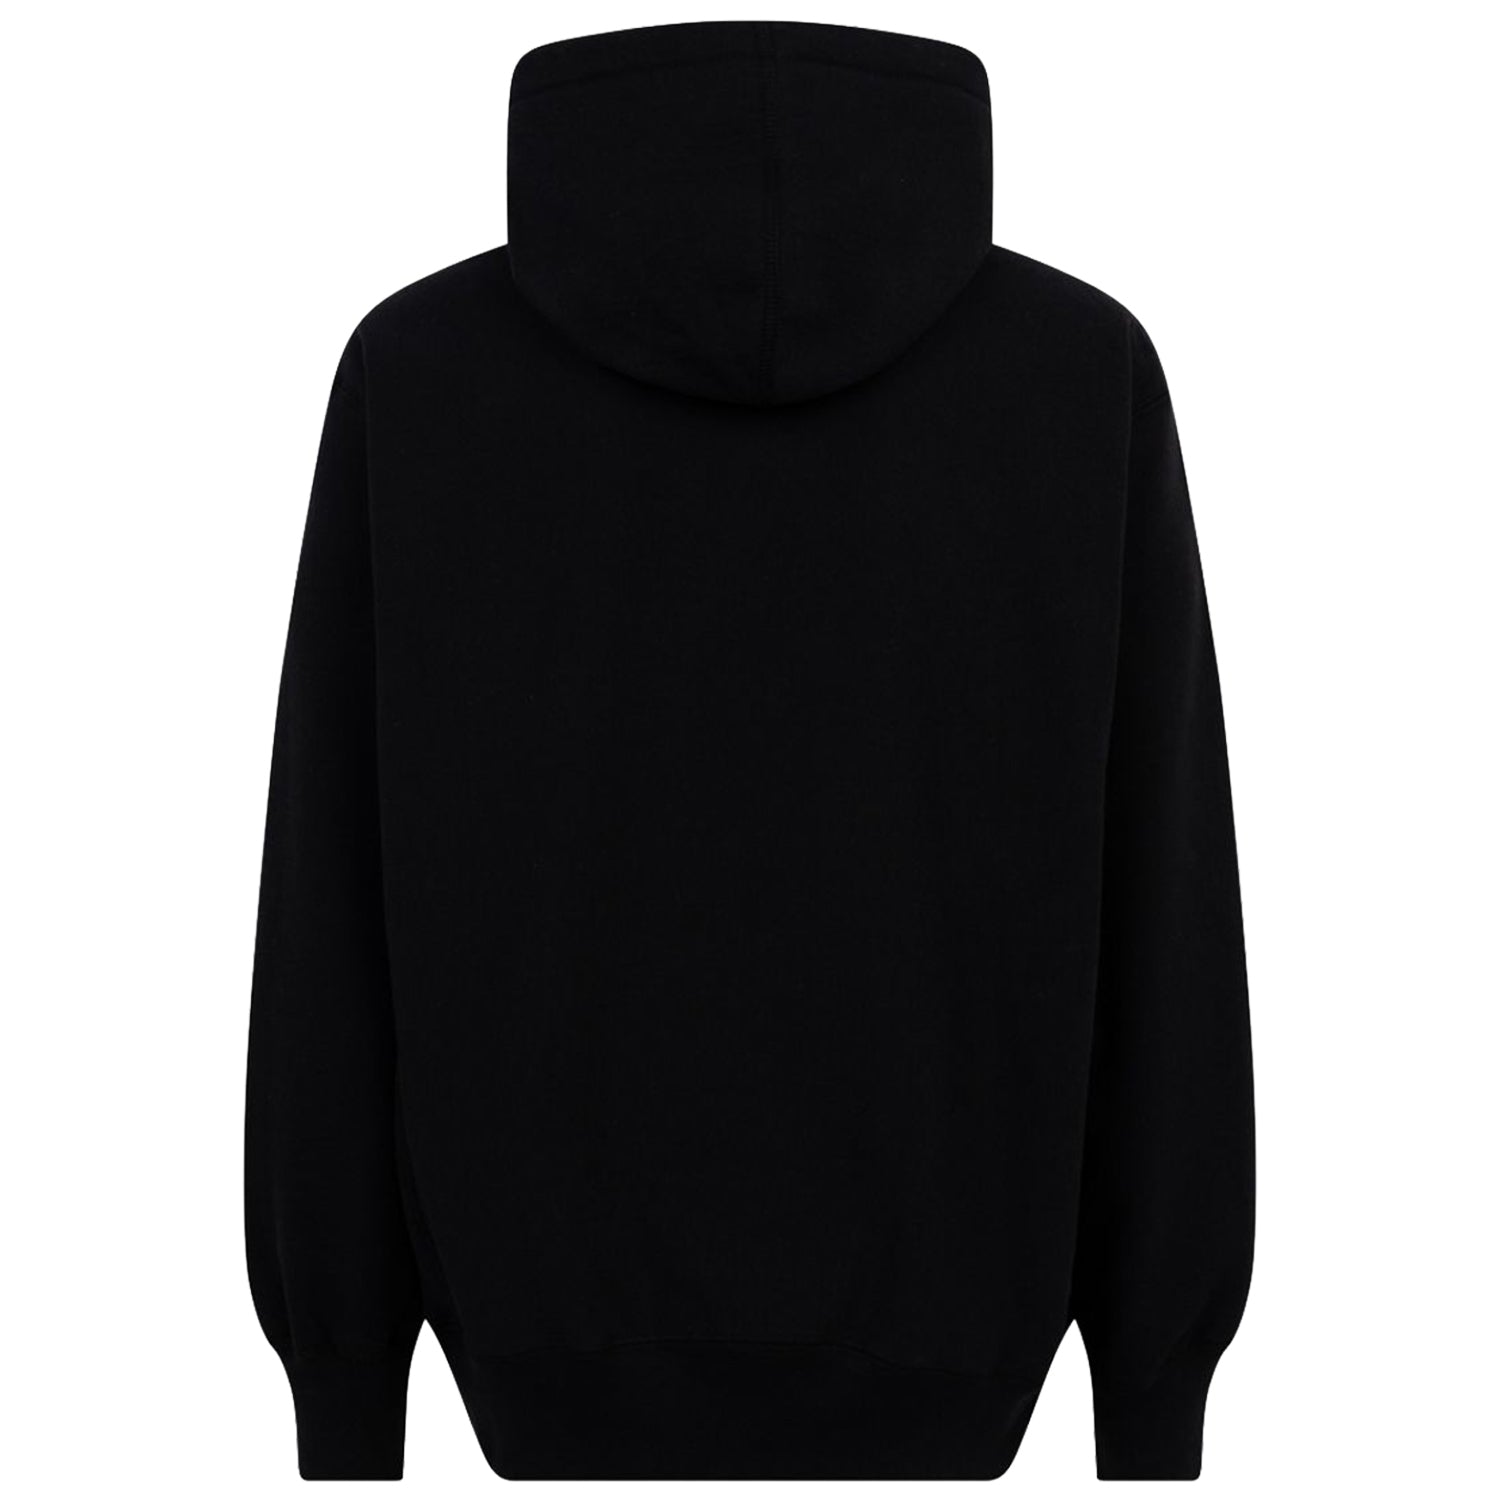 Supreme Number One Hooded Sweatshirt Black